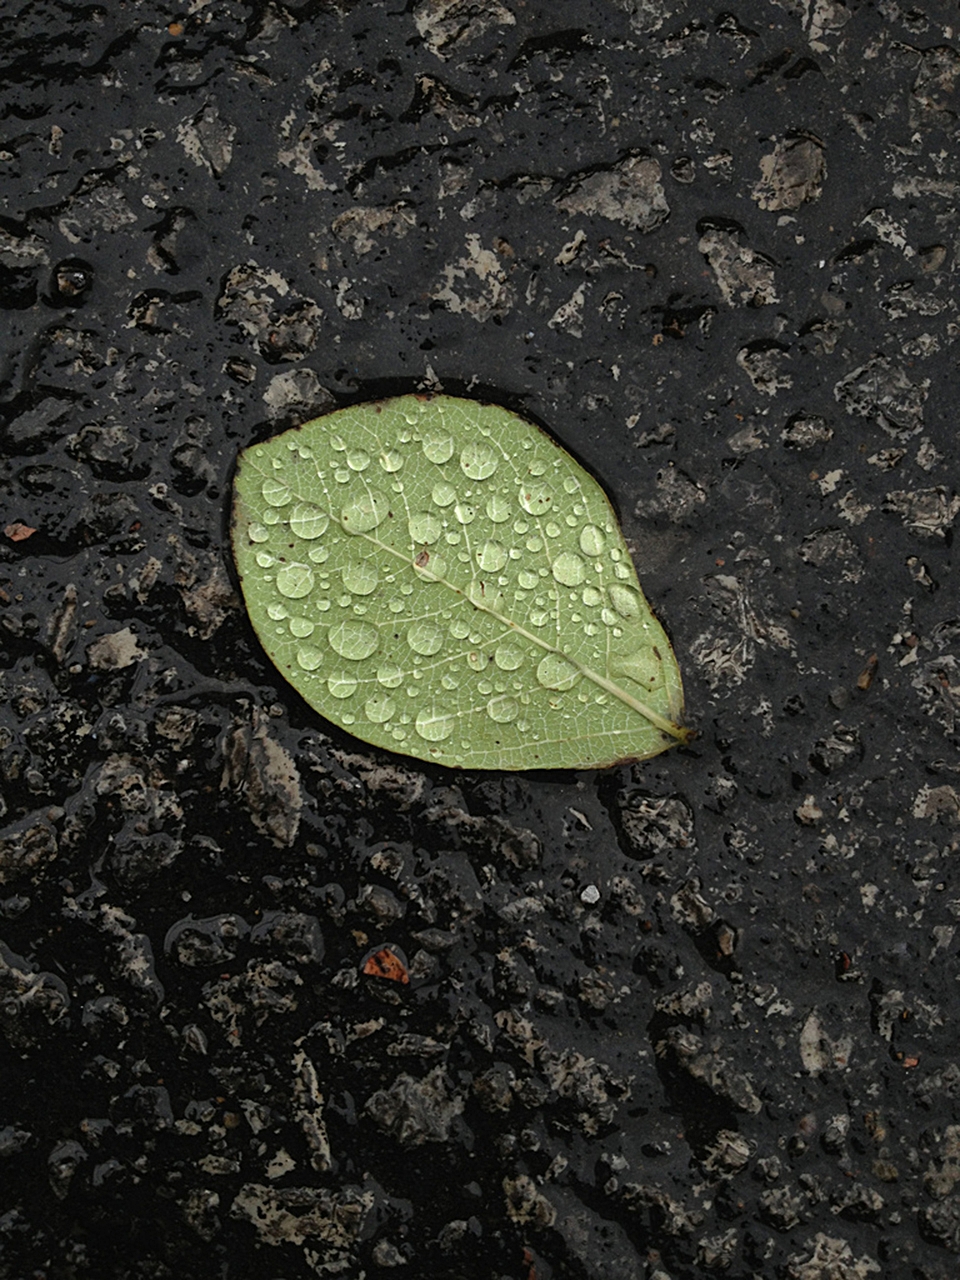 Dewy leaf